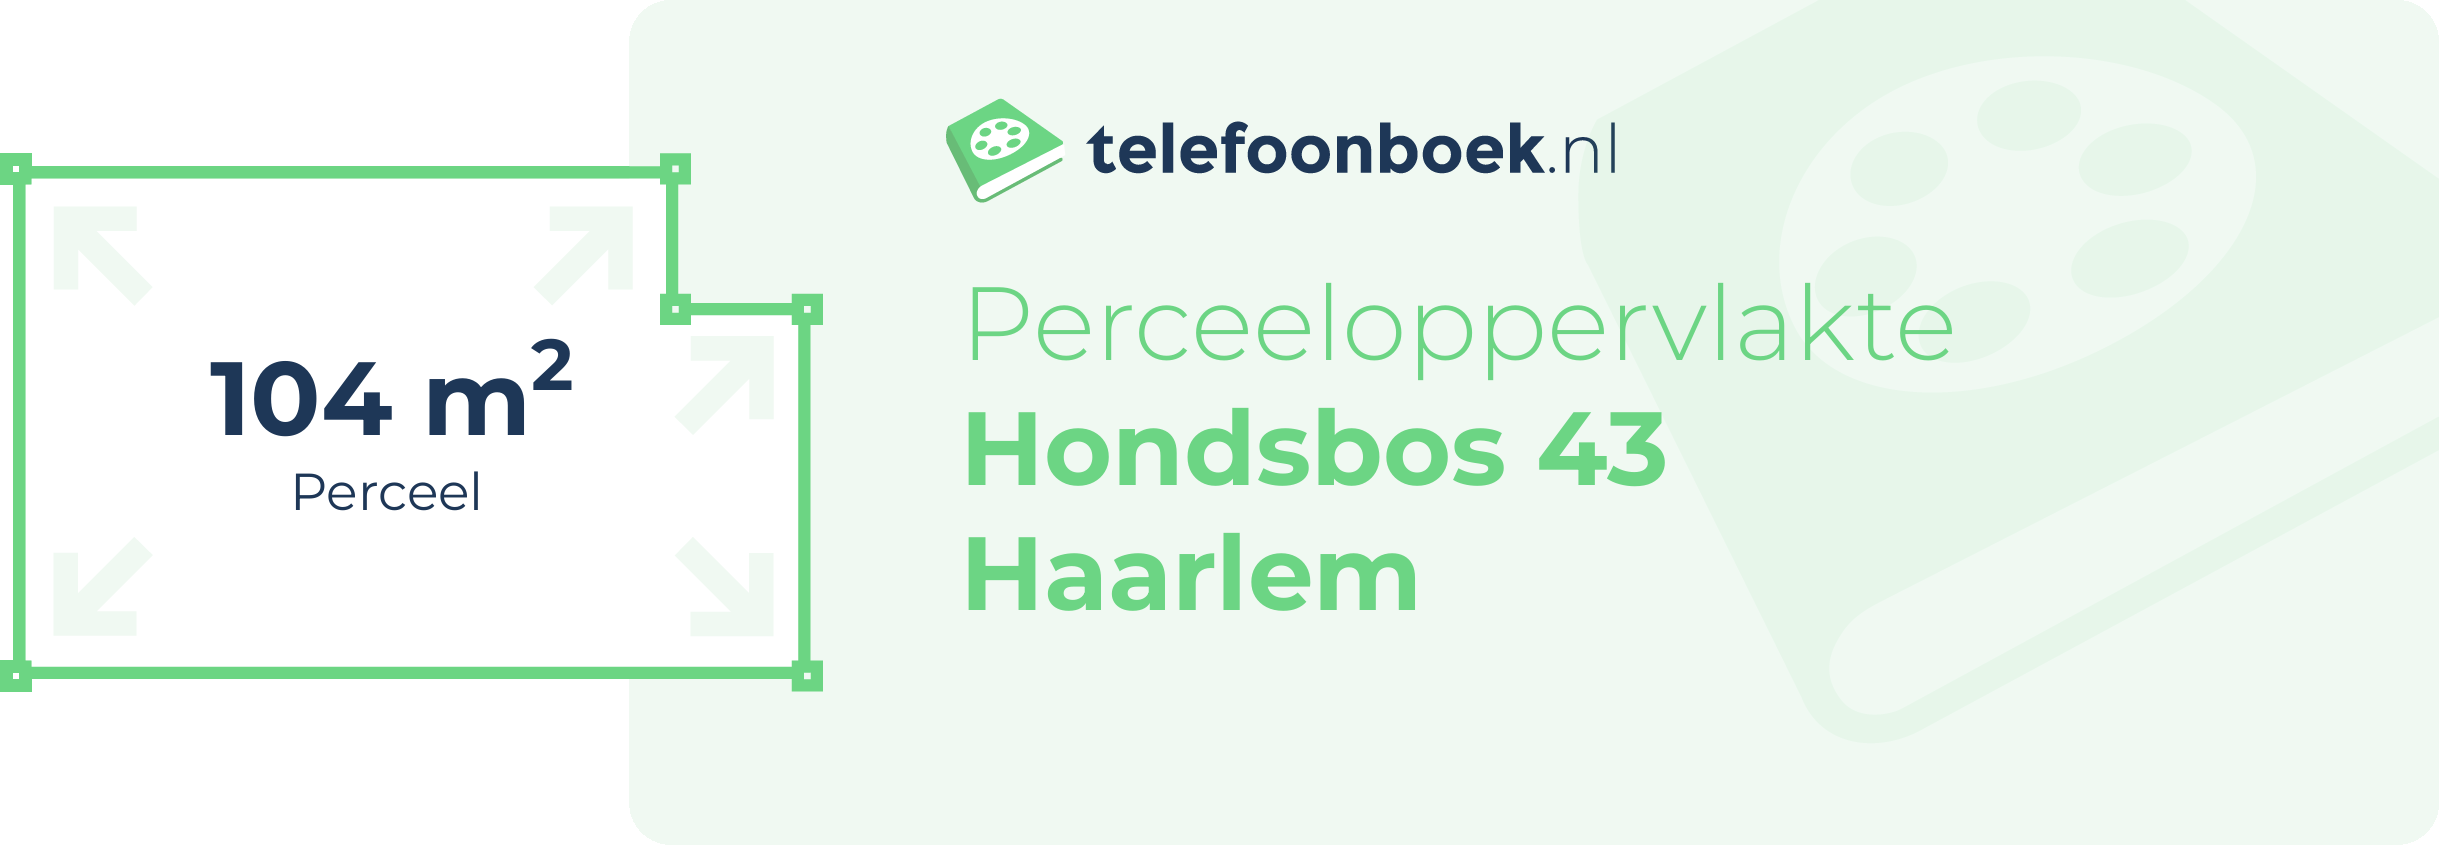 Perceeloppervlakte Hondsbos 43 Haarlem